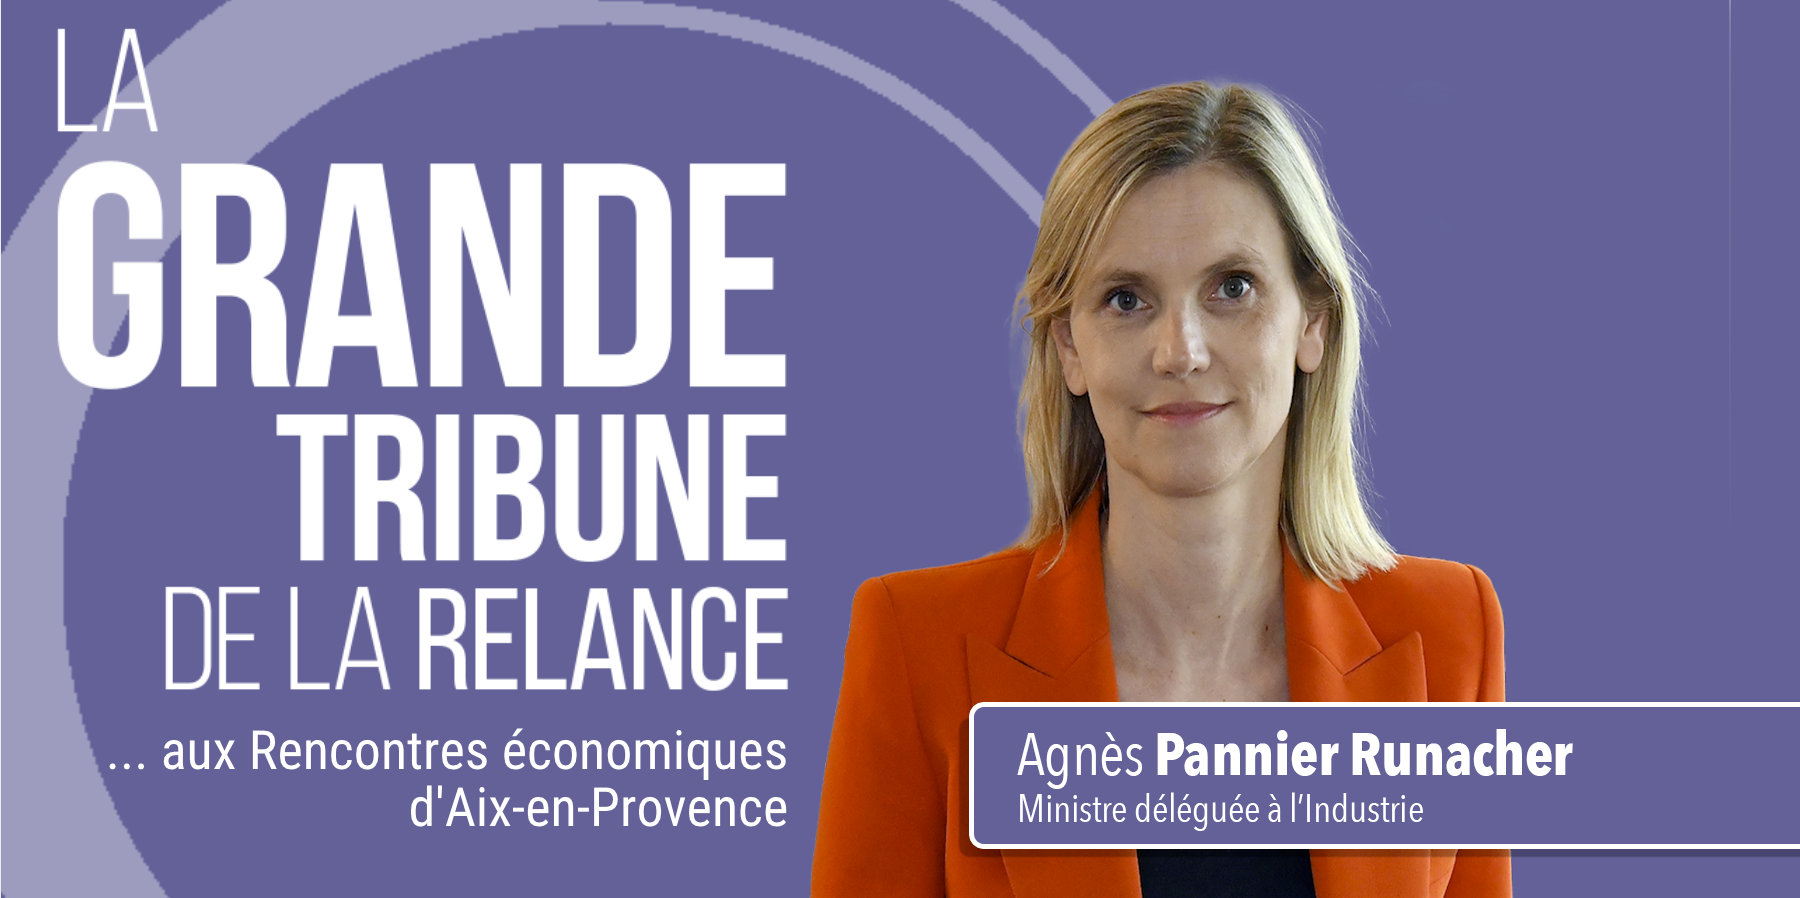 Agnès Pannier-Runacher, Ministre chargée de l'Industrie : 